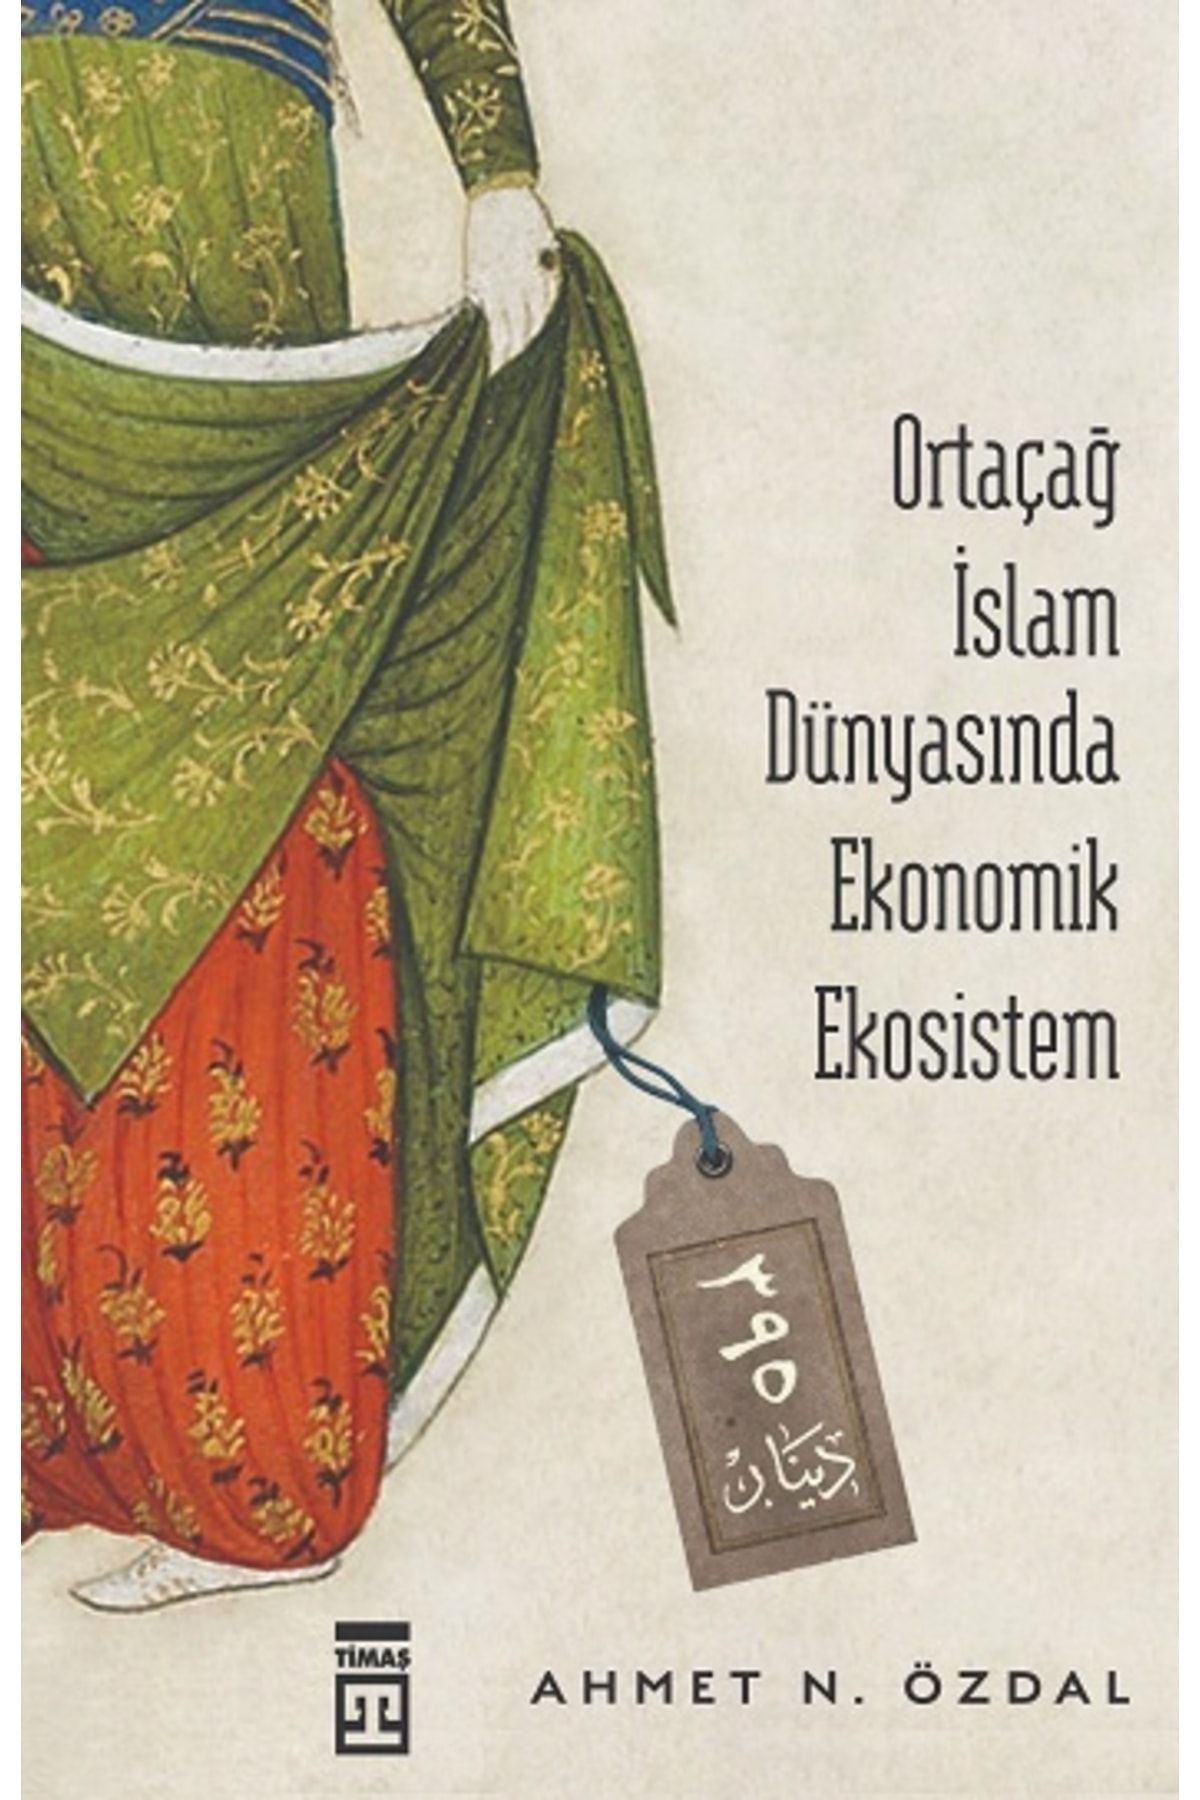 Timaş Yayınları Ortaçağ İslam Dünyasında Ekonomik Ekosistem kitabı - Ahmet Nurullah Özdal - Timaş Yayınları